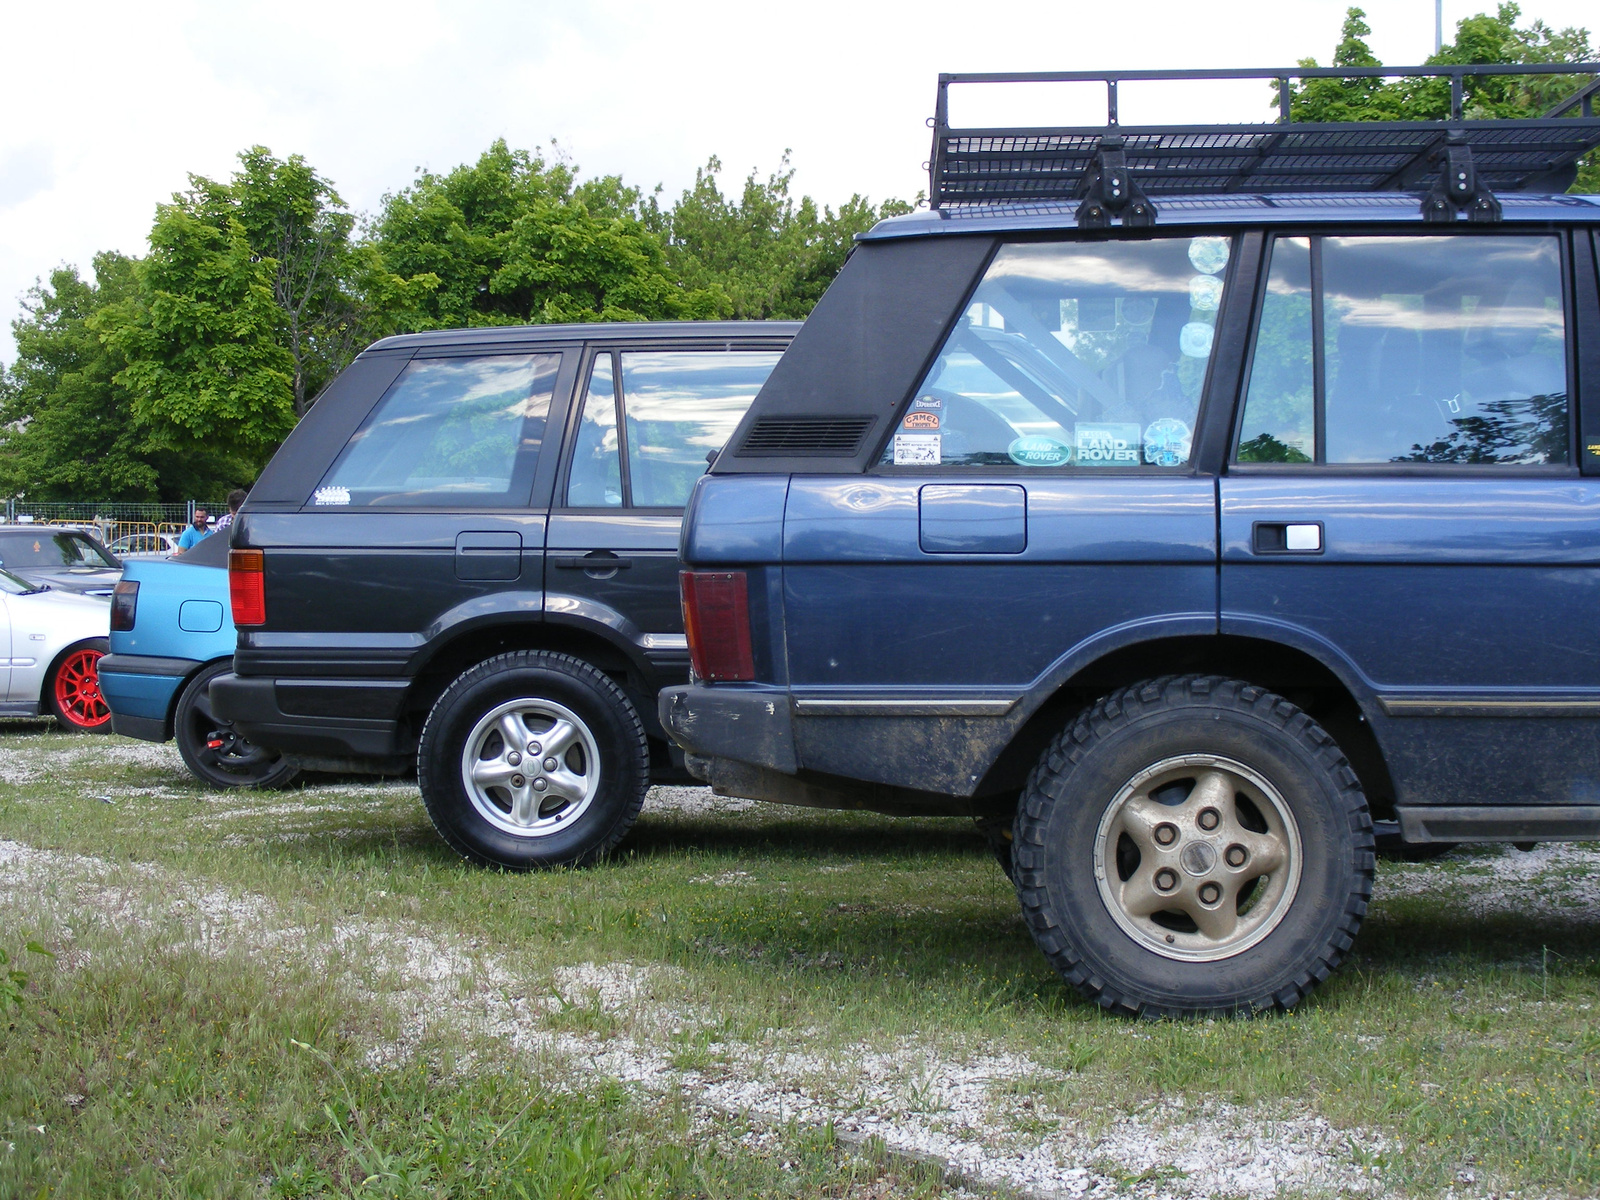 Range Rover I+II